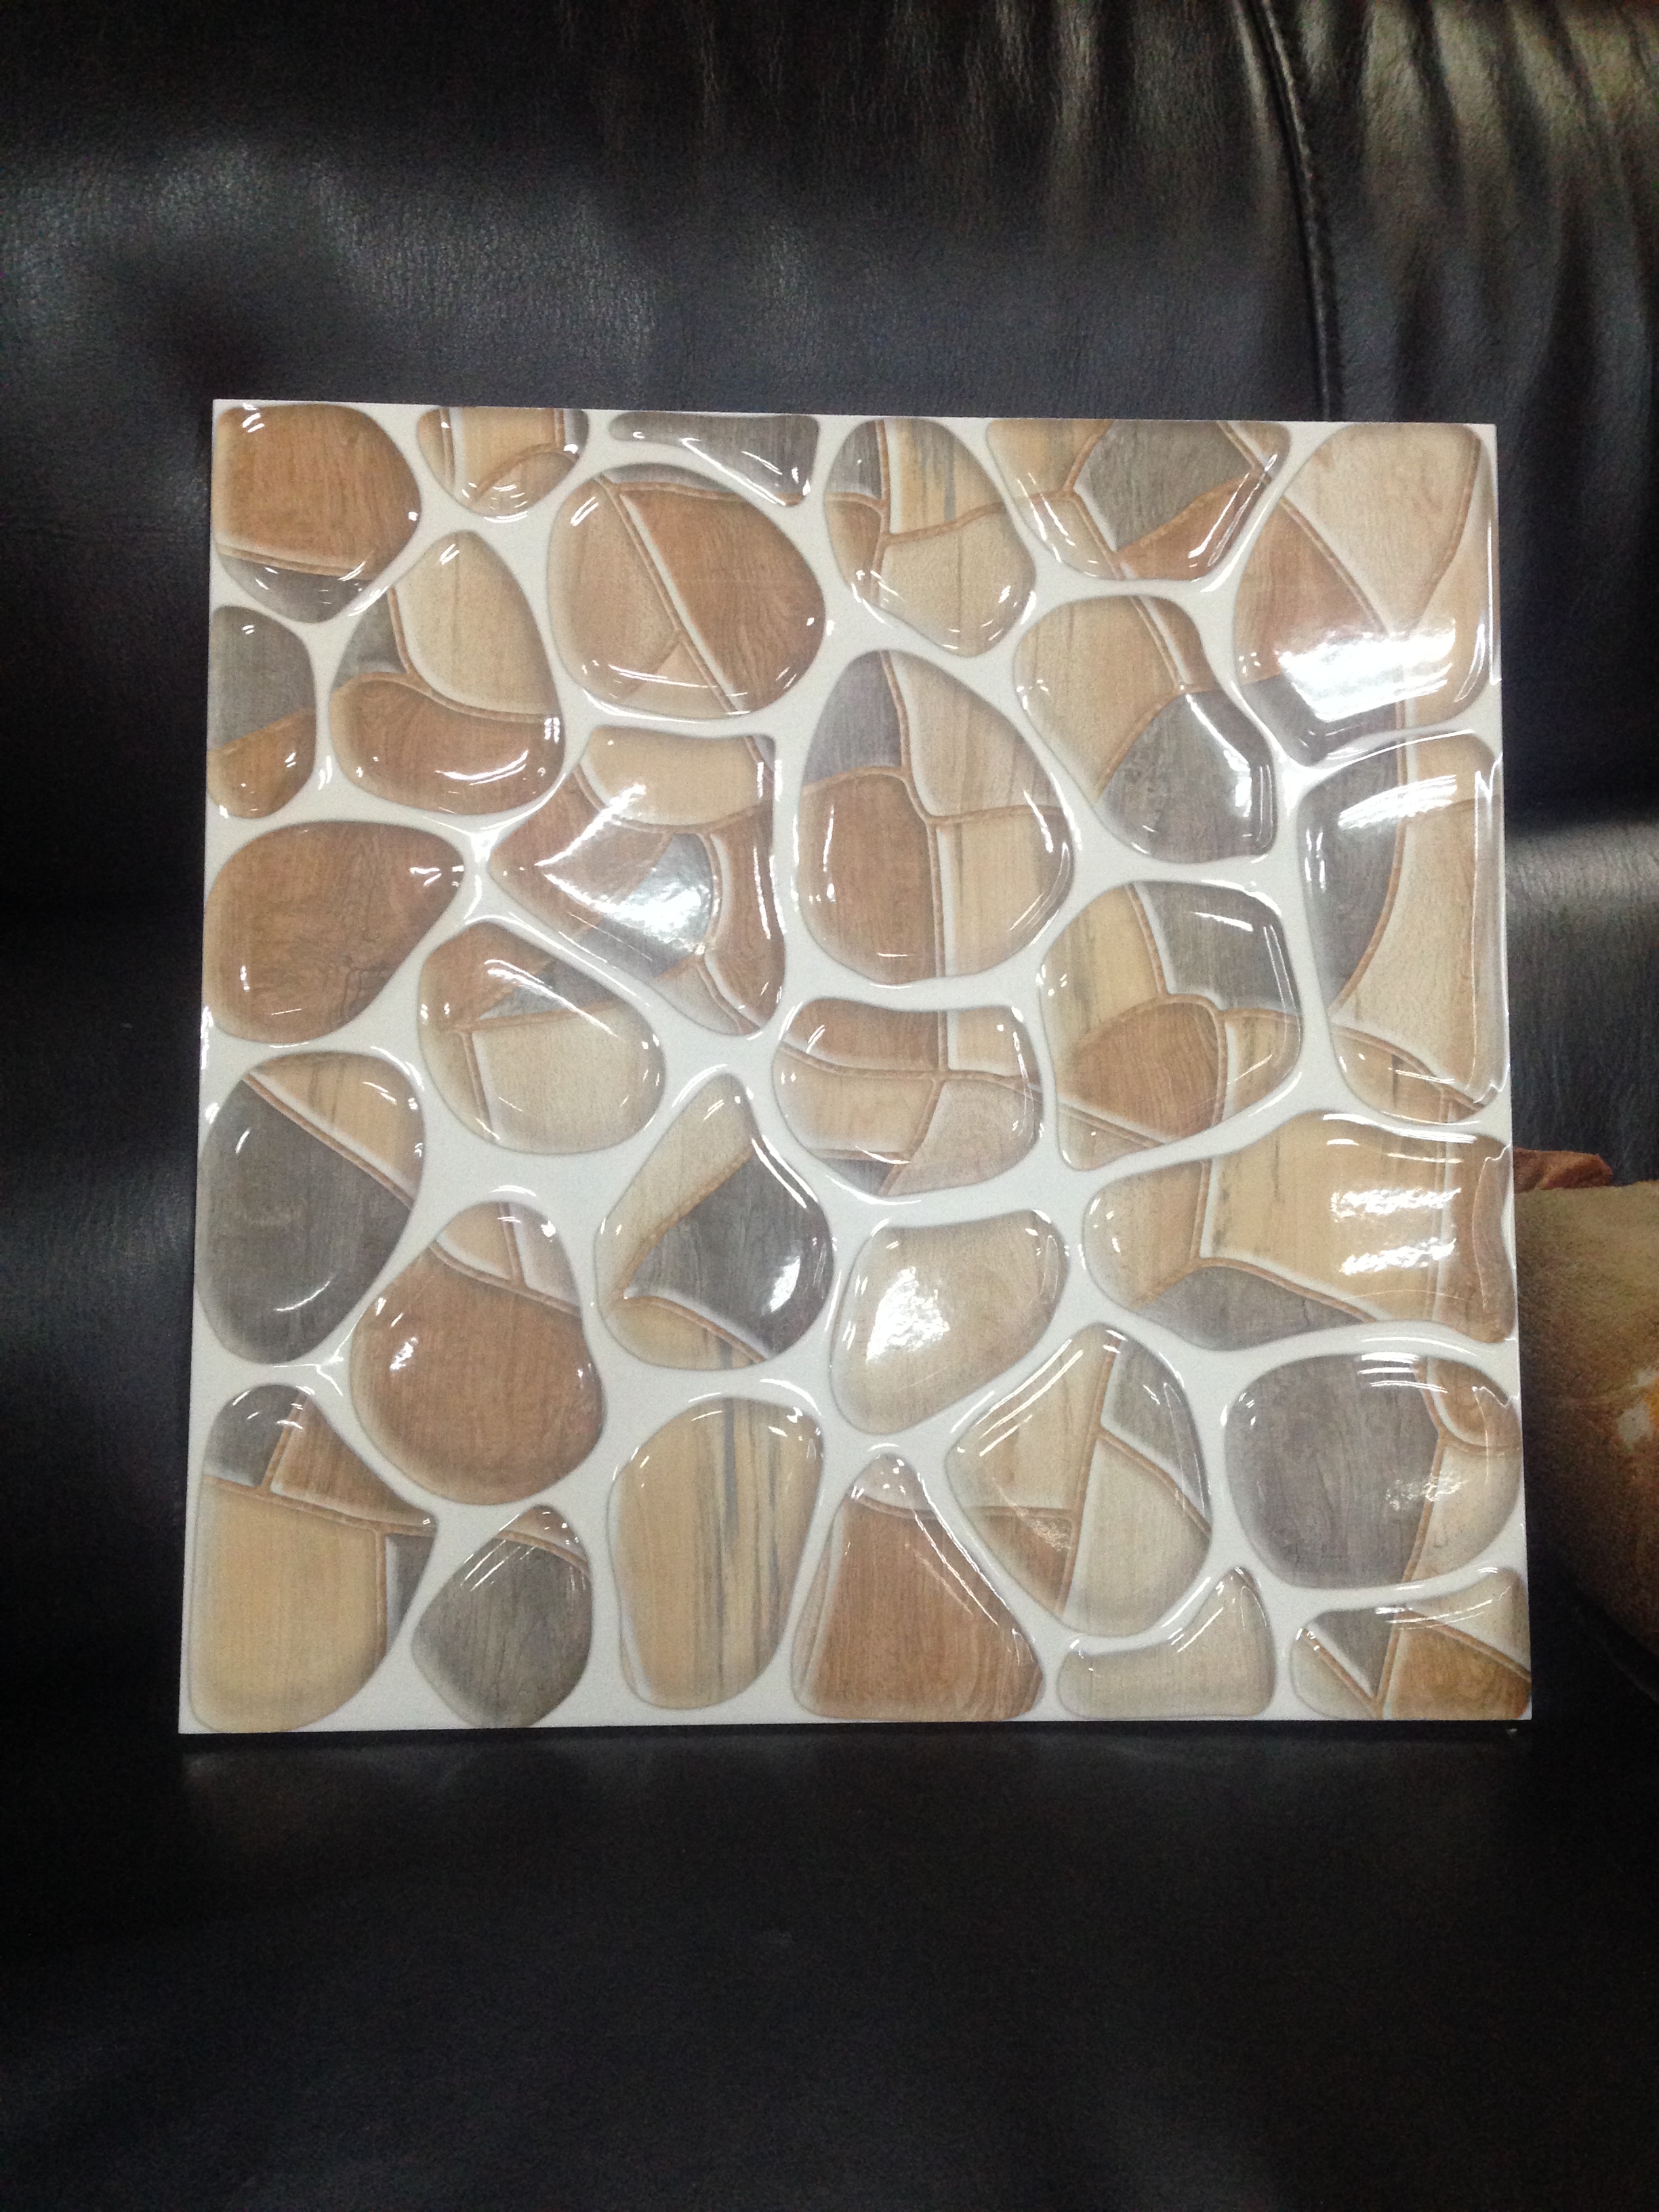 供应琥珀釉抛晶砖 抛晶瓷砖 抛晶地砖300x300mm